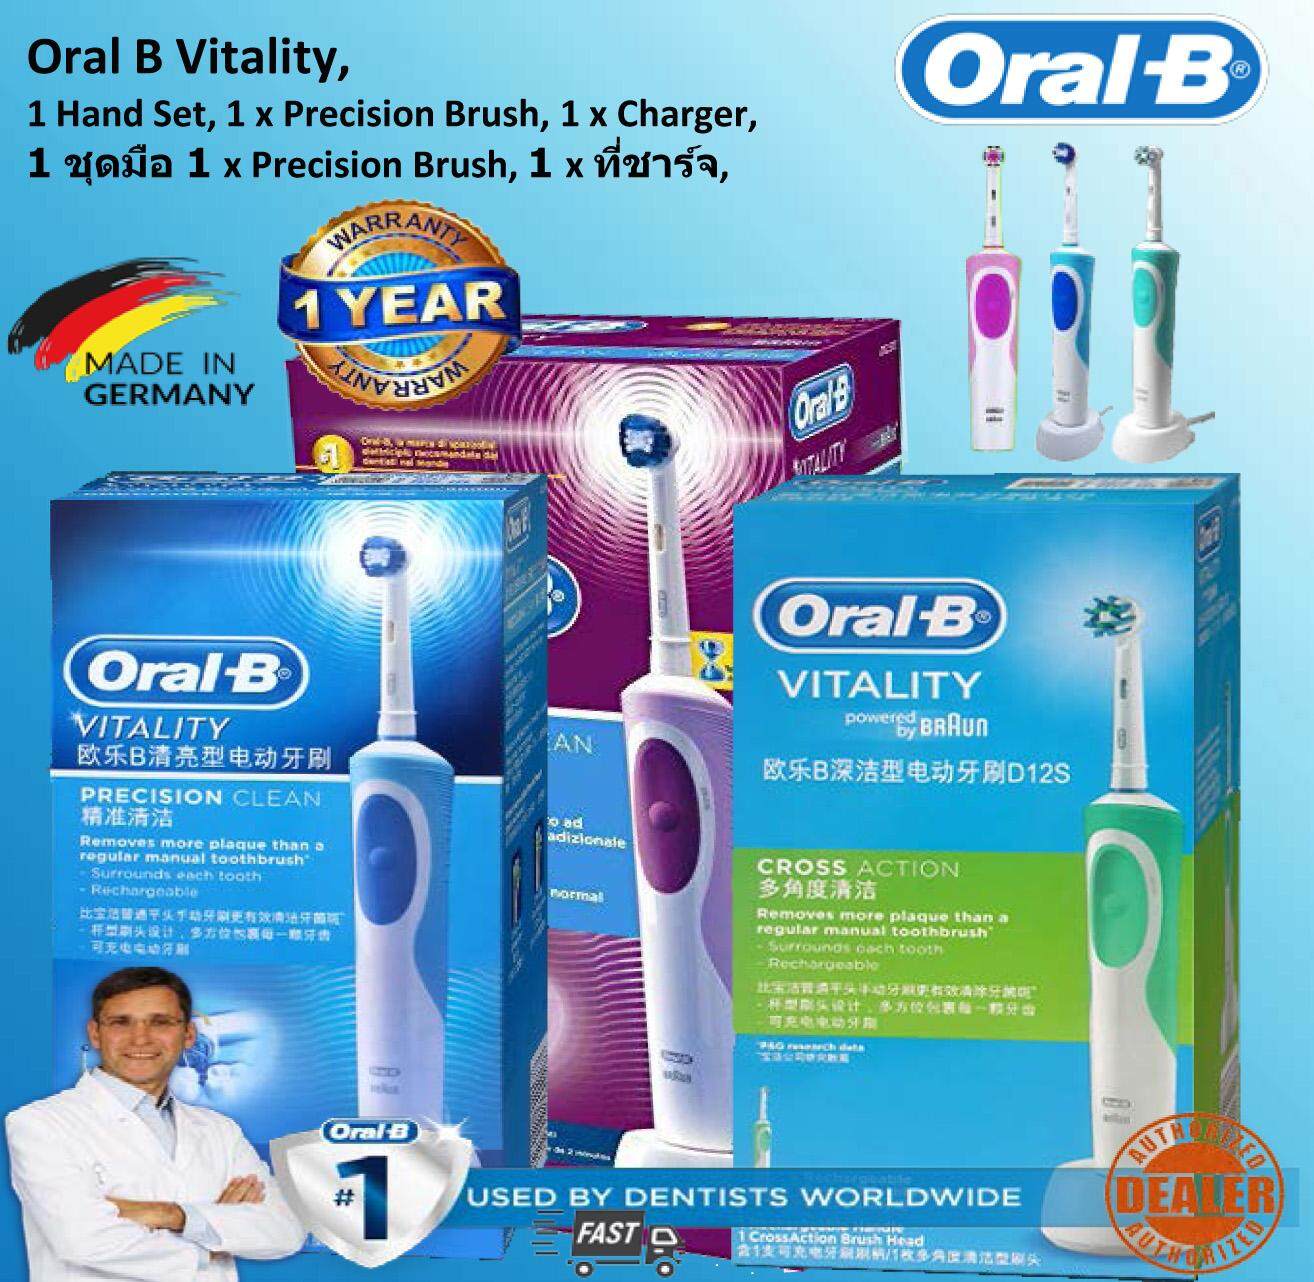 แปรงสีฟันไฟฟ้าเพื่อรอยยิ้มขาวสดใส ปัตตานี Oral B Braun Electric Toothbrush Vitality Pecision CLEAN  Oral B แปรงสีฟันไฟฟ้า รุ่น Vitality ขายดีอันดับ 1